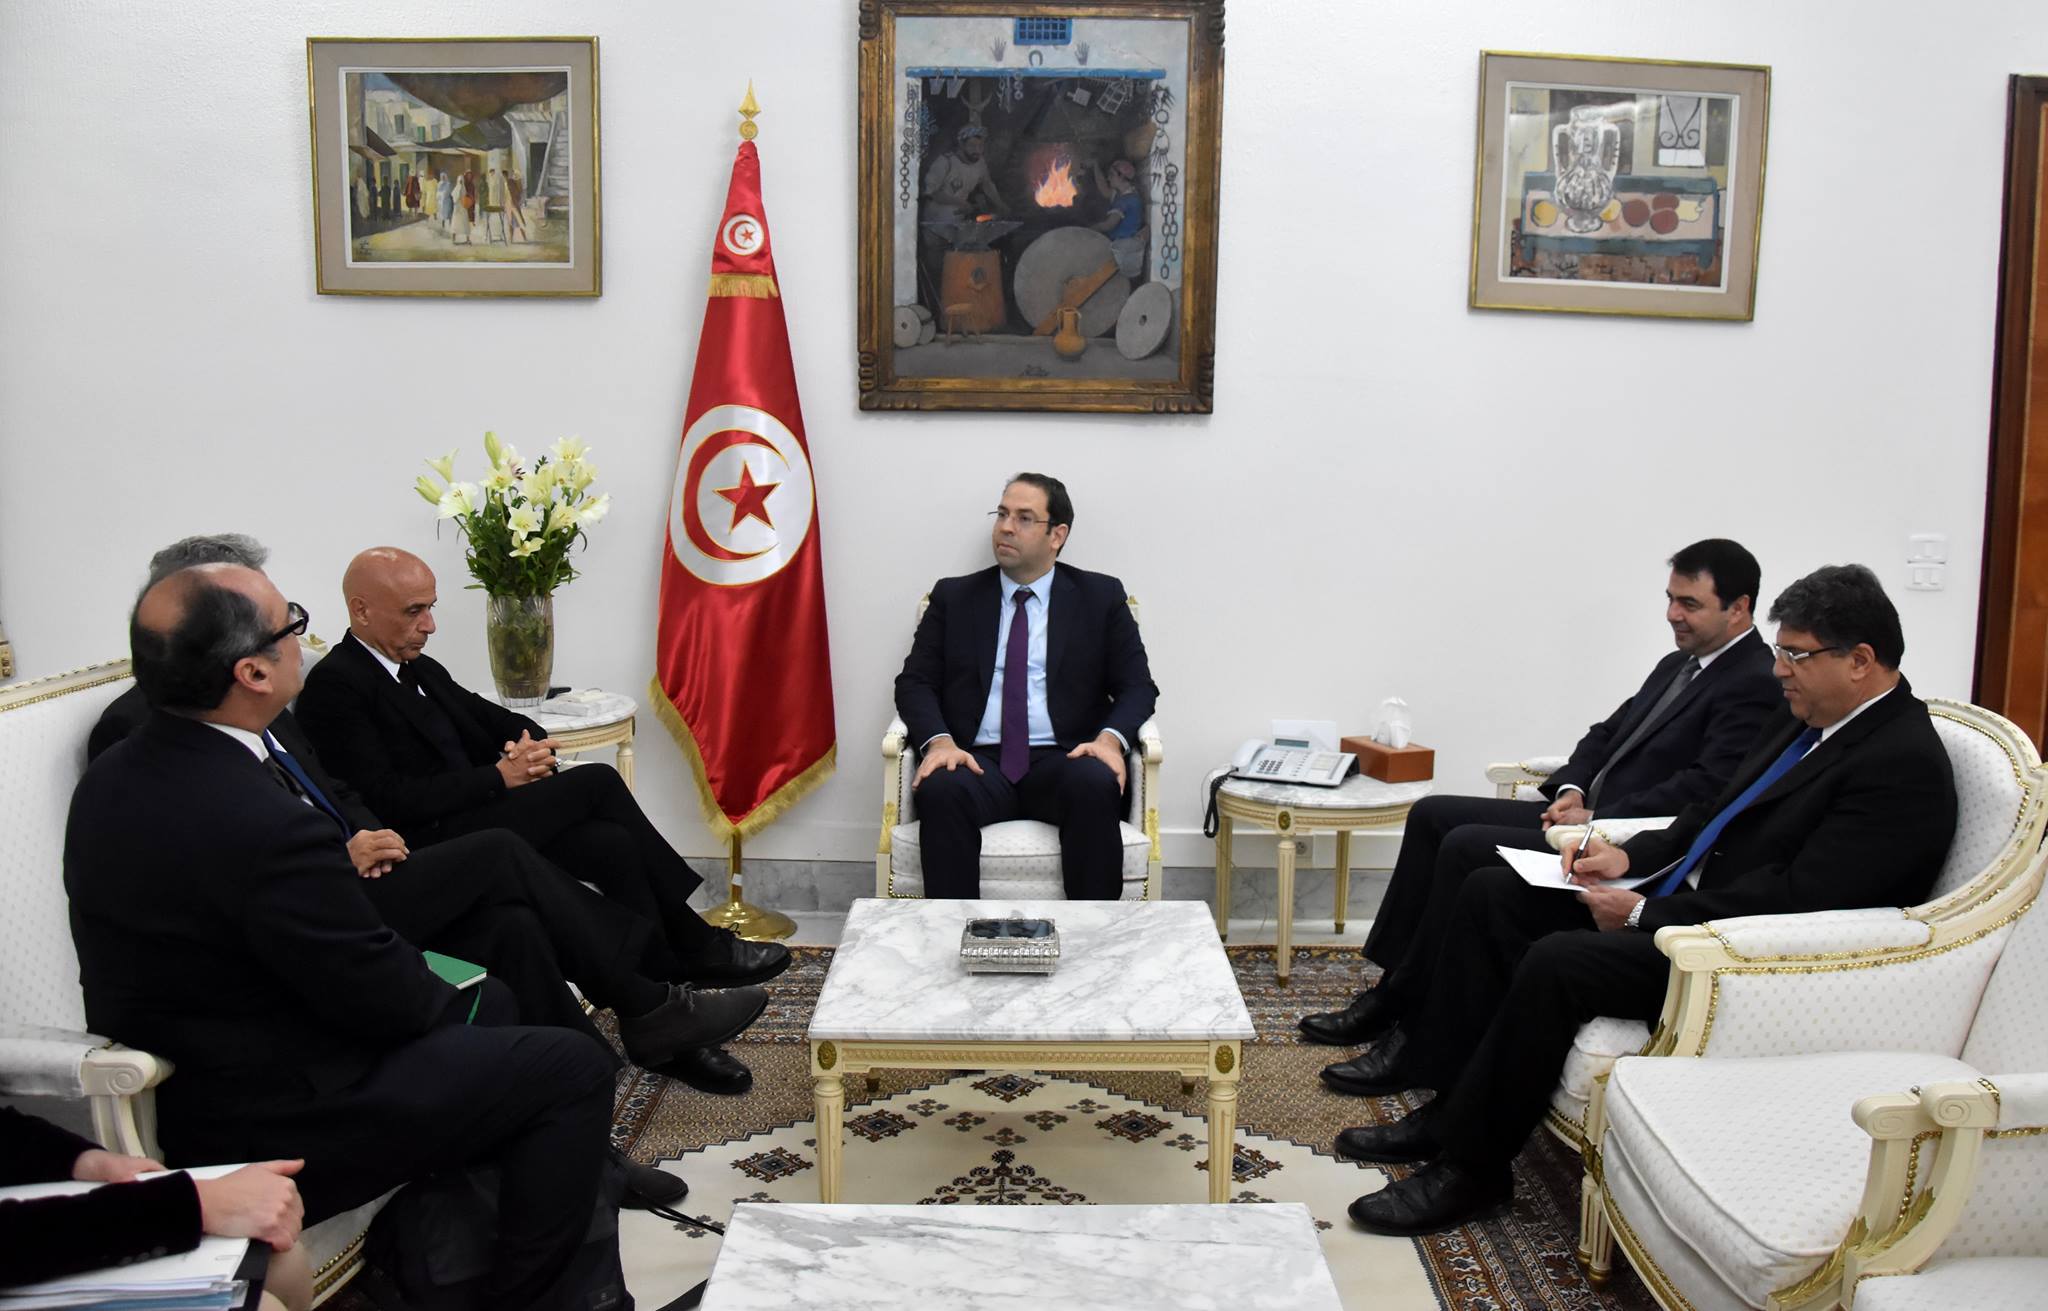 Après l’Allemagne, l’Italie veut organiser des vols charters vers la Tunisie